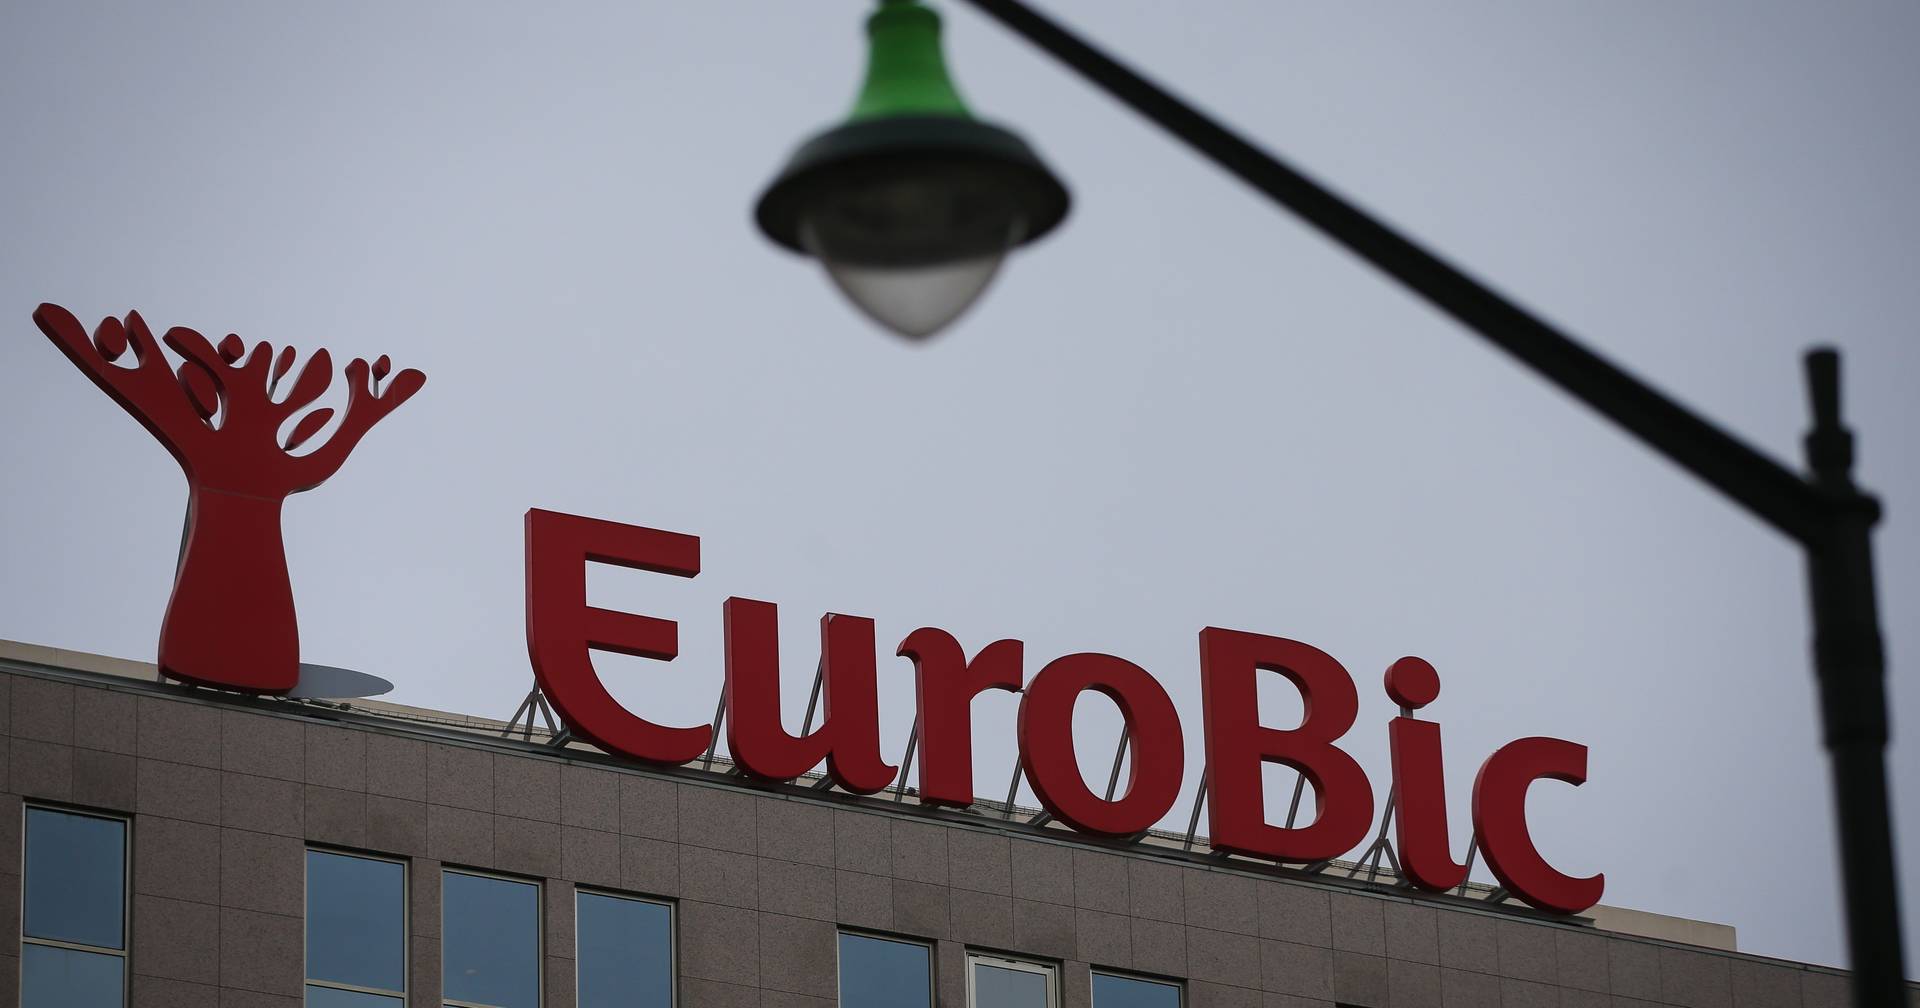 Eurobic está mais perto da venda, passa de prejuízos a ganhos de €25 milhões, mas recusa que sejam lucros excessivos